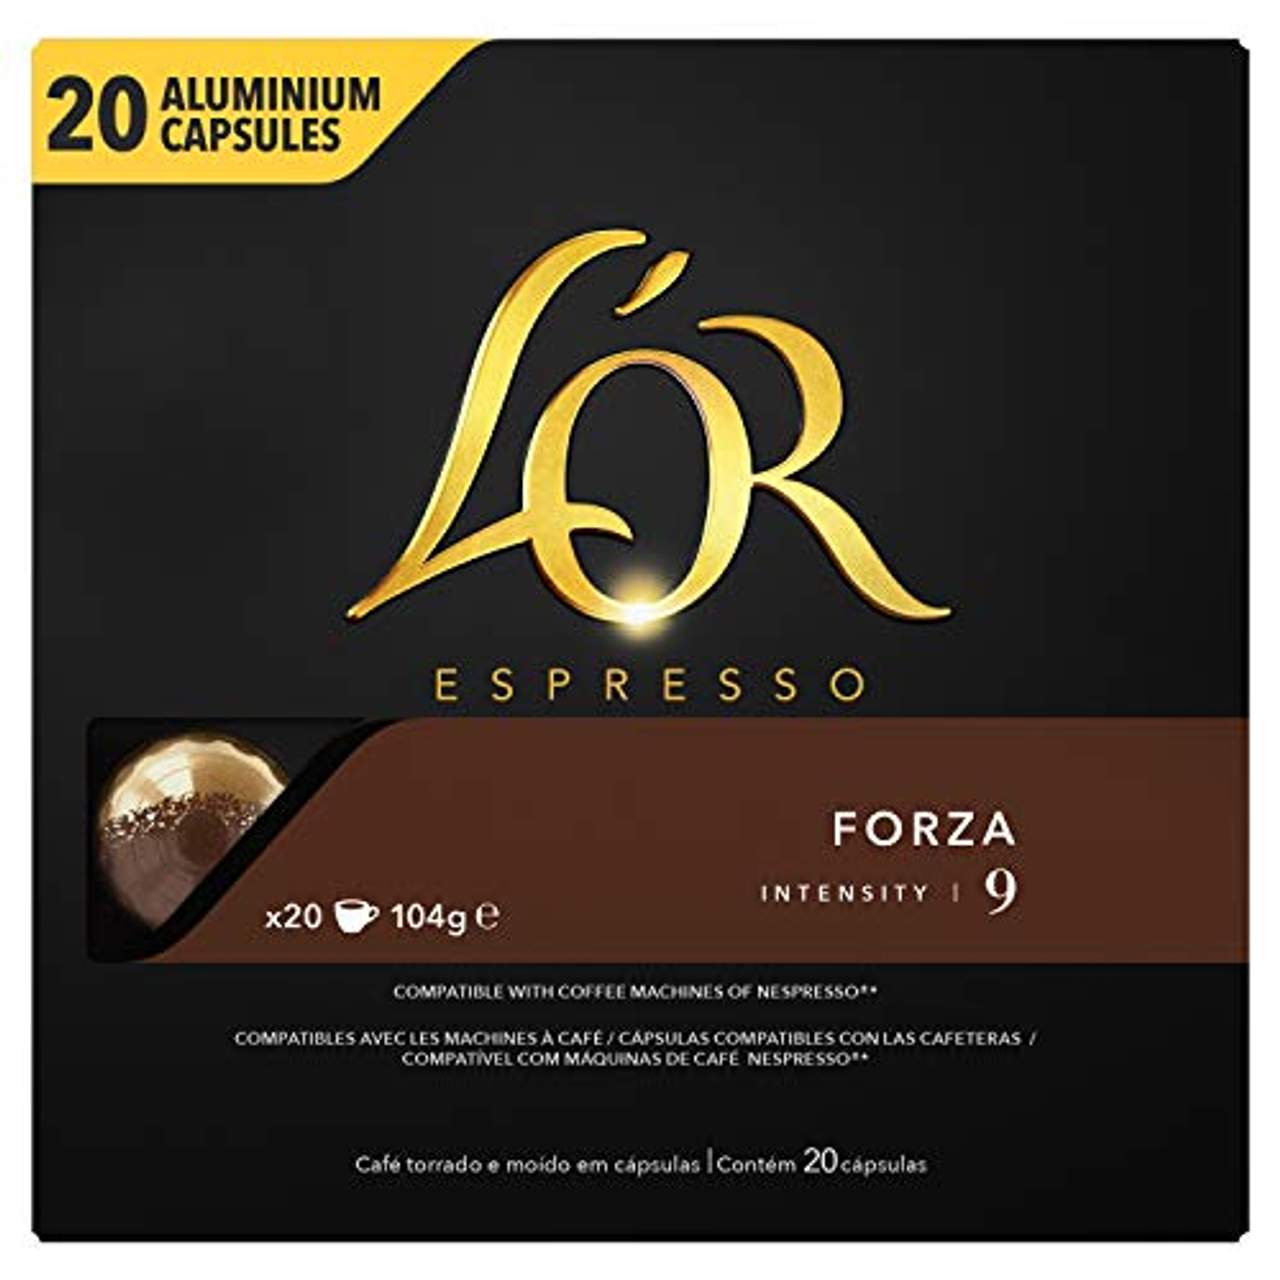 L'OR Espresso Coffee Forza Intensity 9